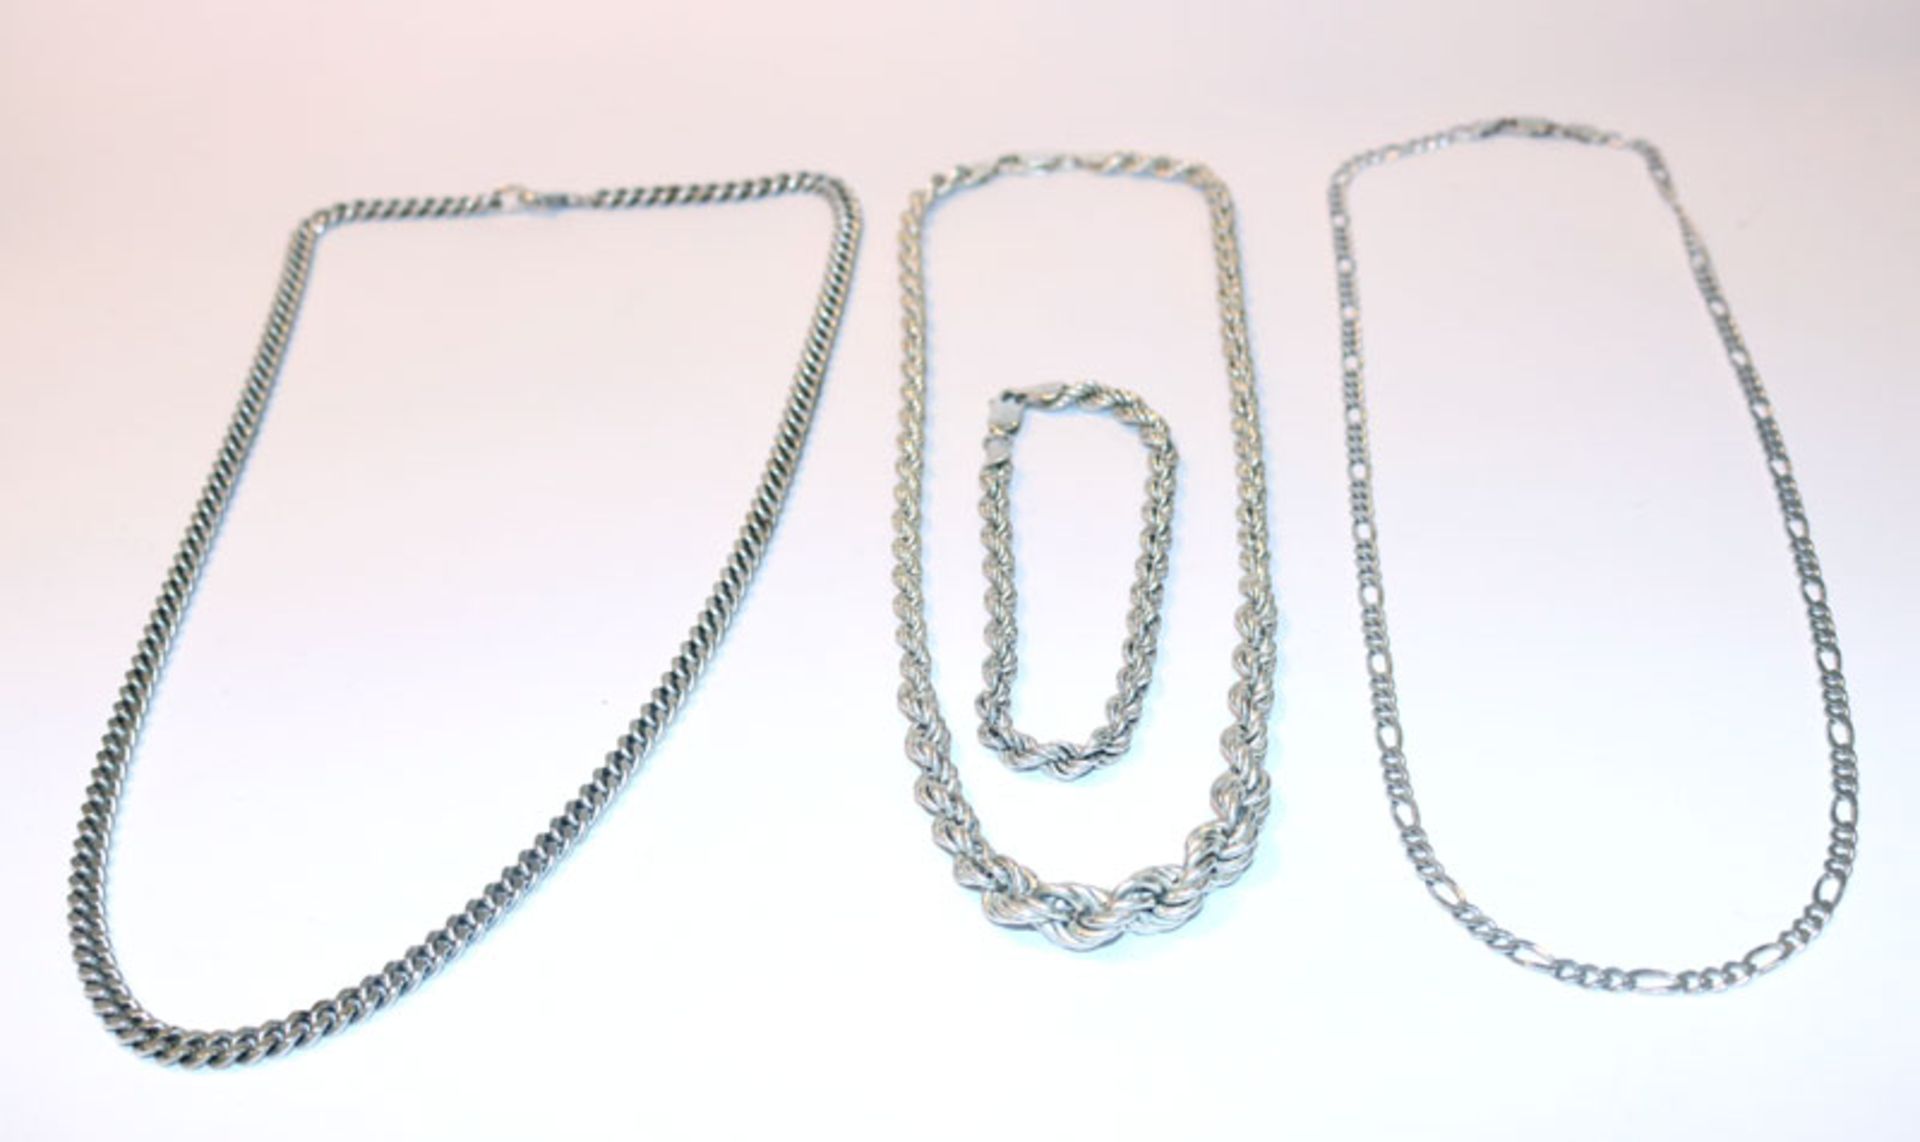 3 Sterlingsilber Ketten in verschiedenen Dekoren, L 42, 48 und 52 cm, sowie Armband, 18 cm, zus.